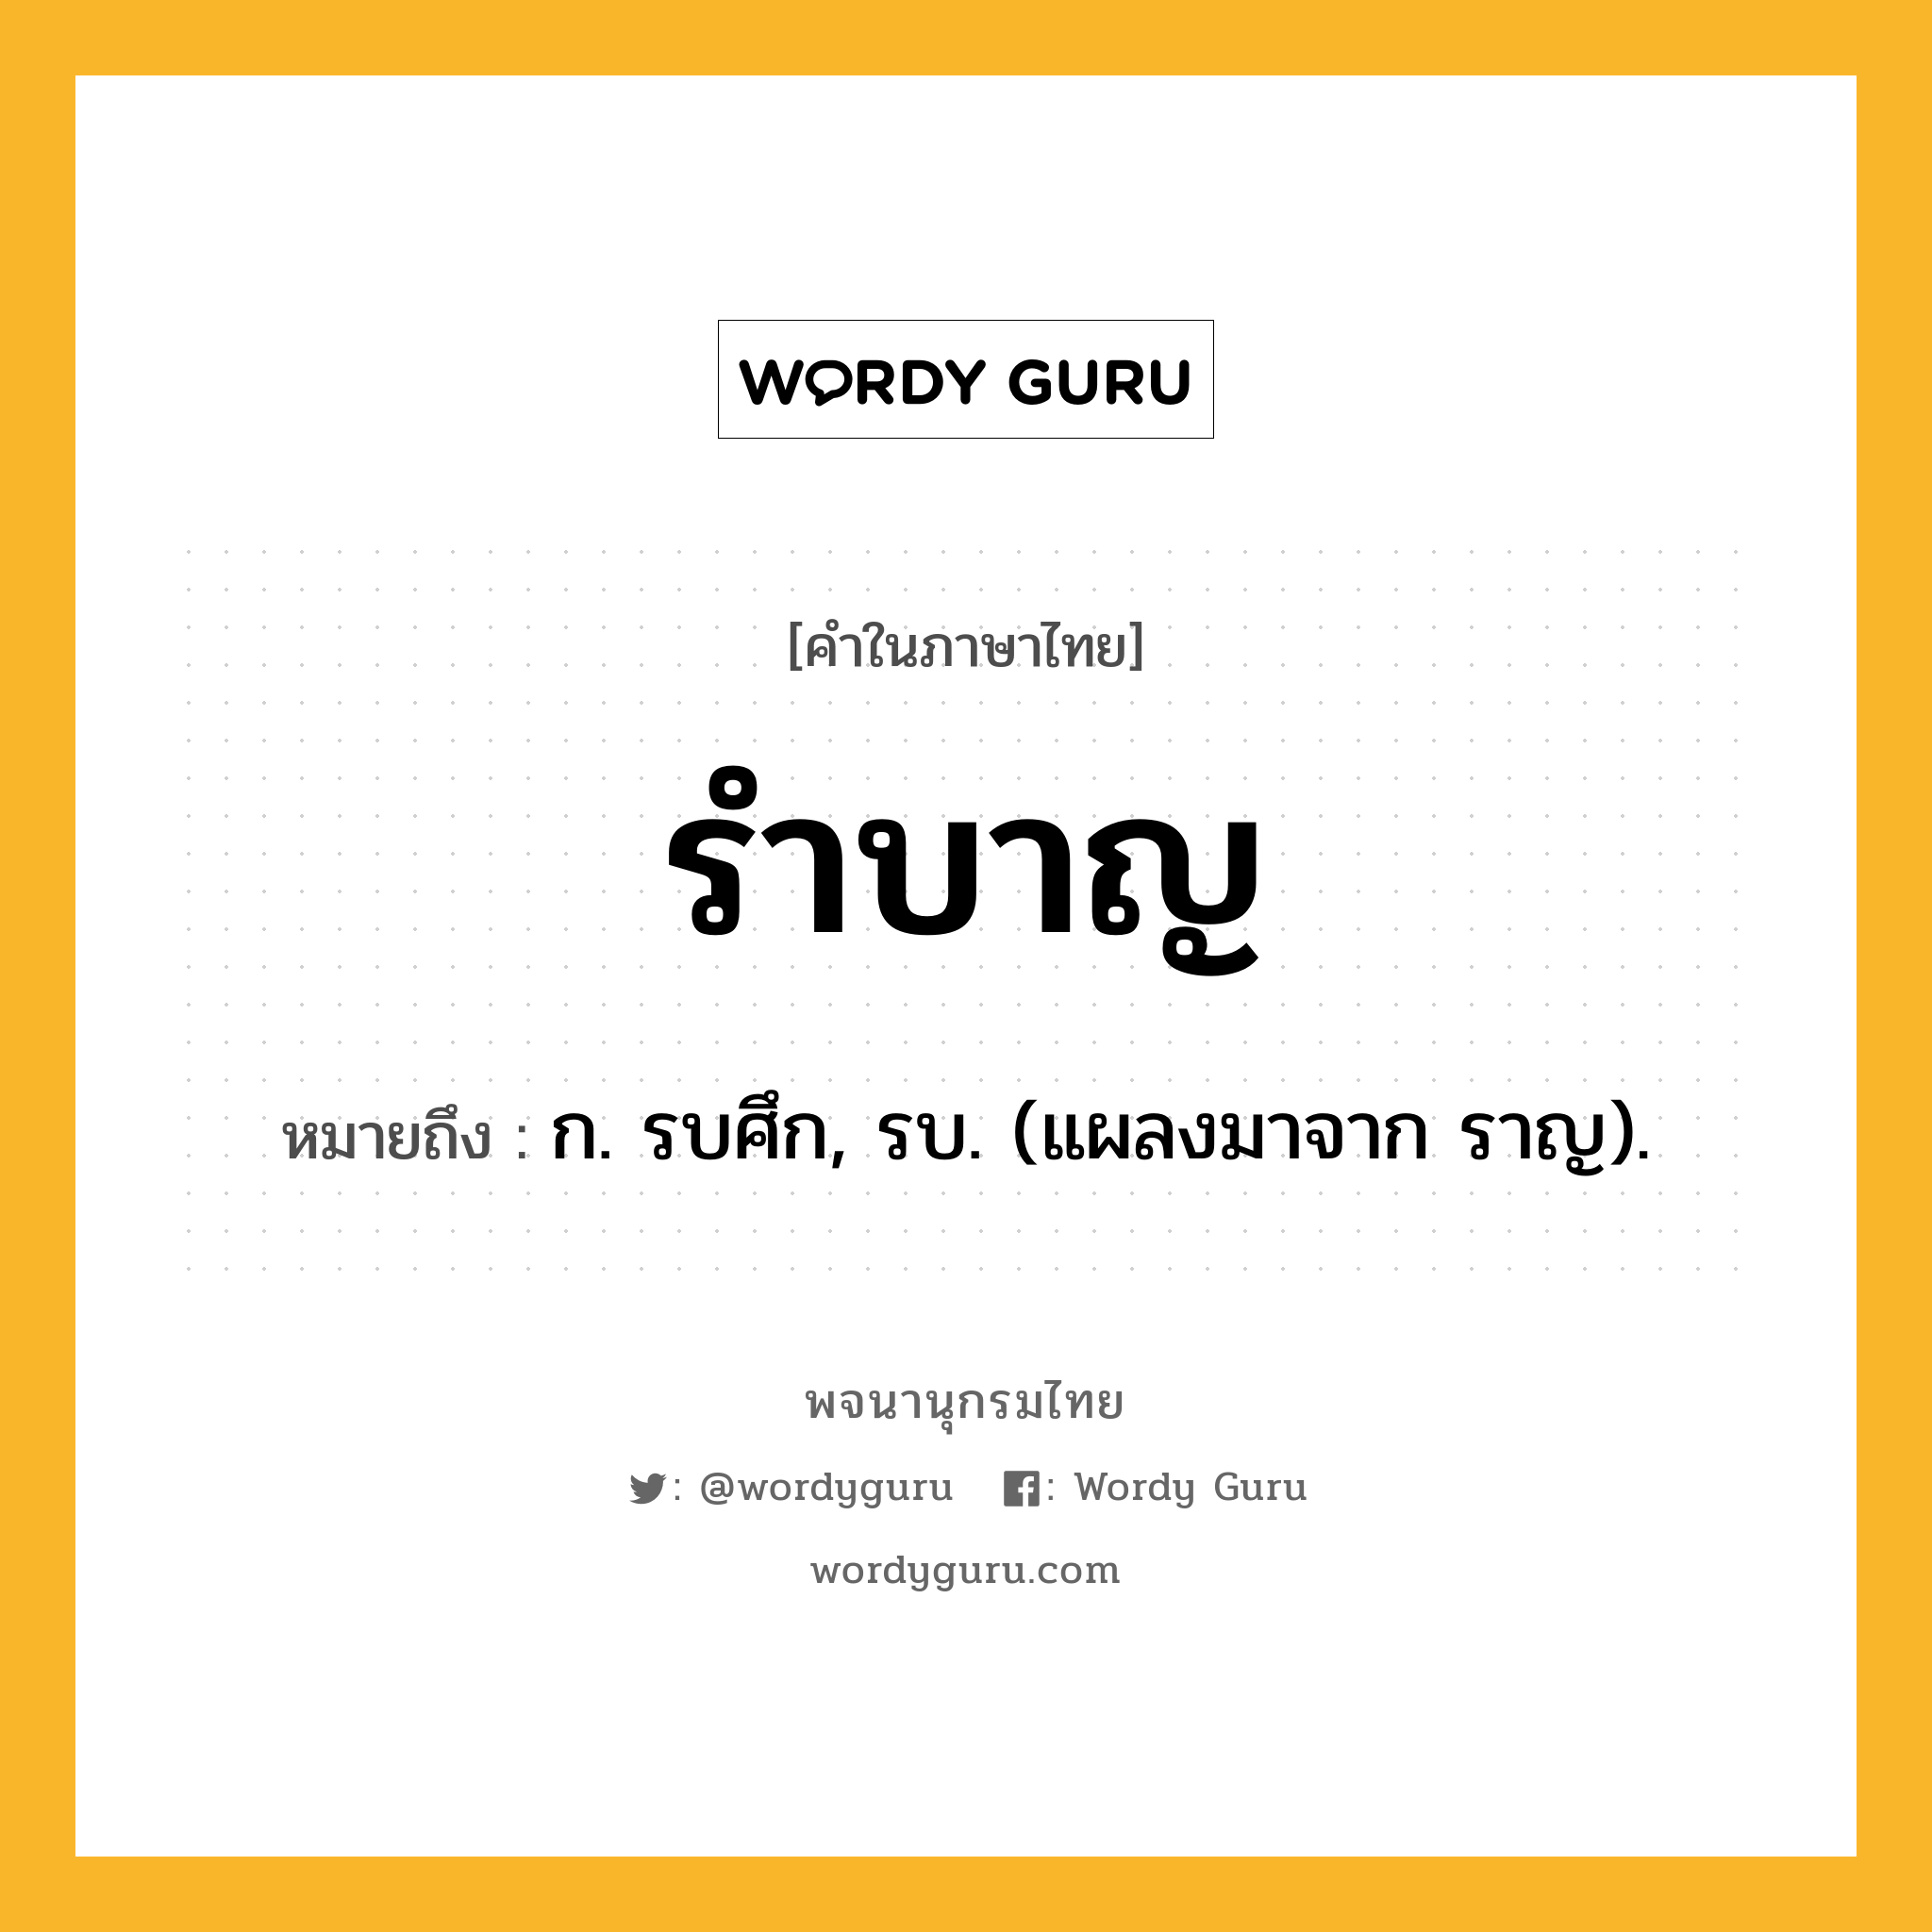 รำบาญ หมายถึงอะไร?, คำในภาษาไทย รำบาญ หมายถึง ก. รบศึก, รบ. (แผลงมาจาก ราญ).